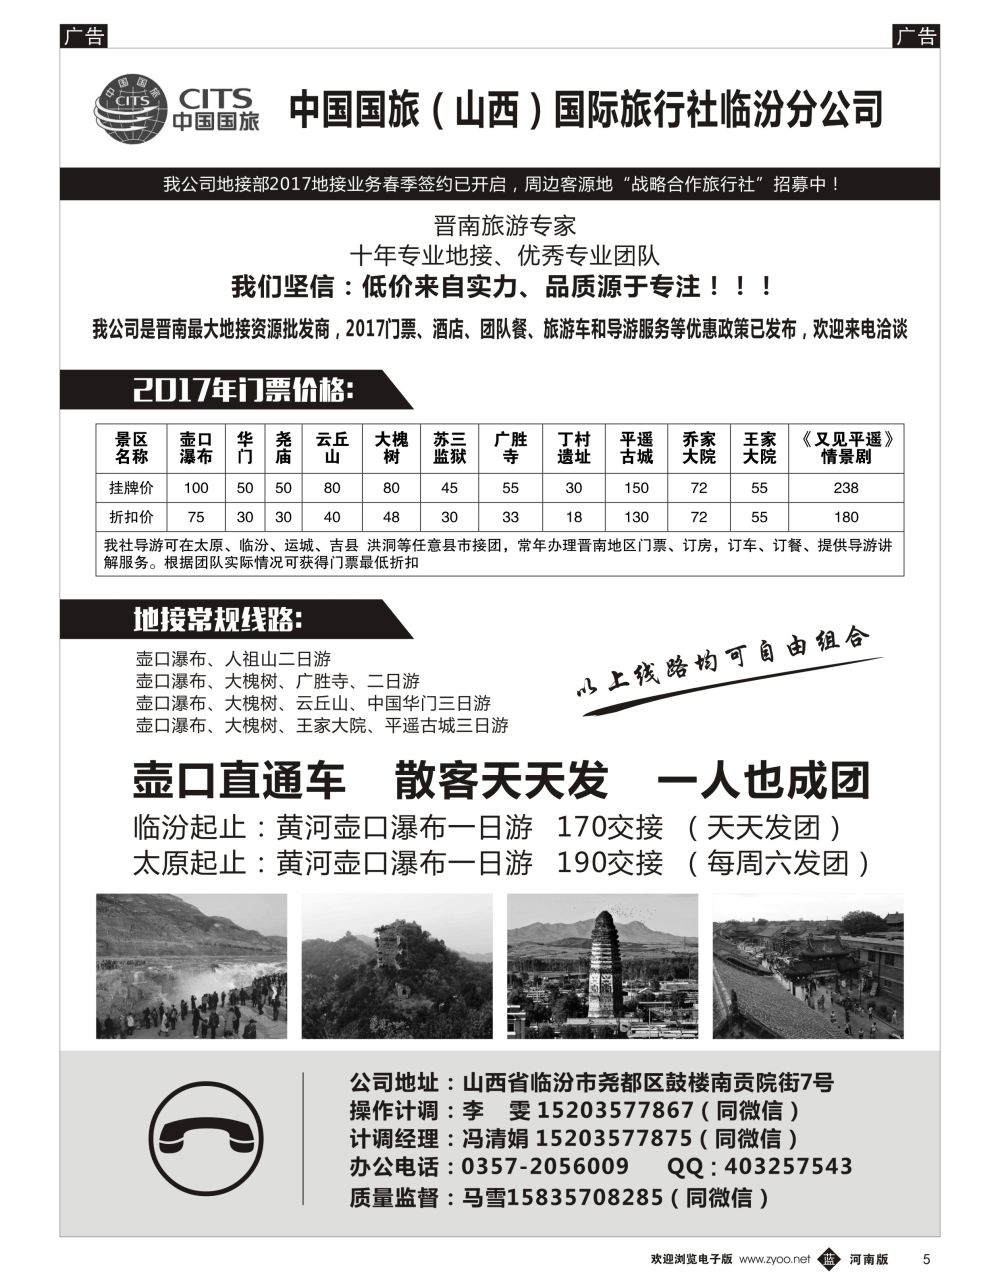 b黑005  中国国旅（山西）国际旅行社临汾分公司